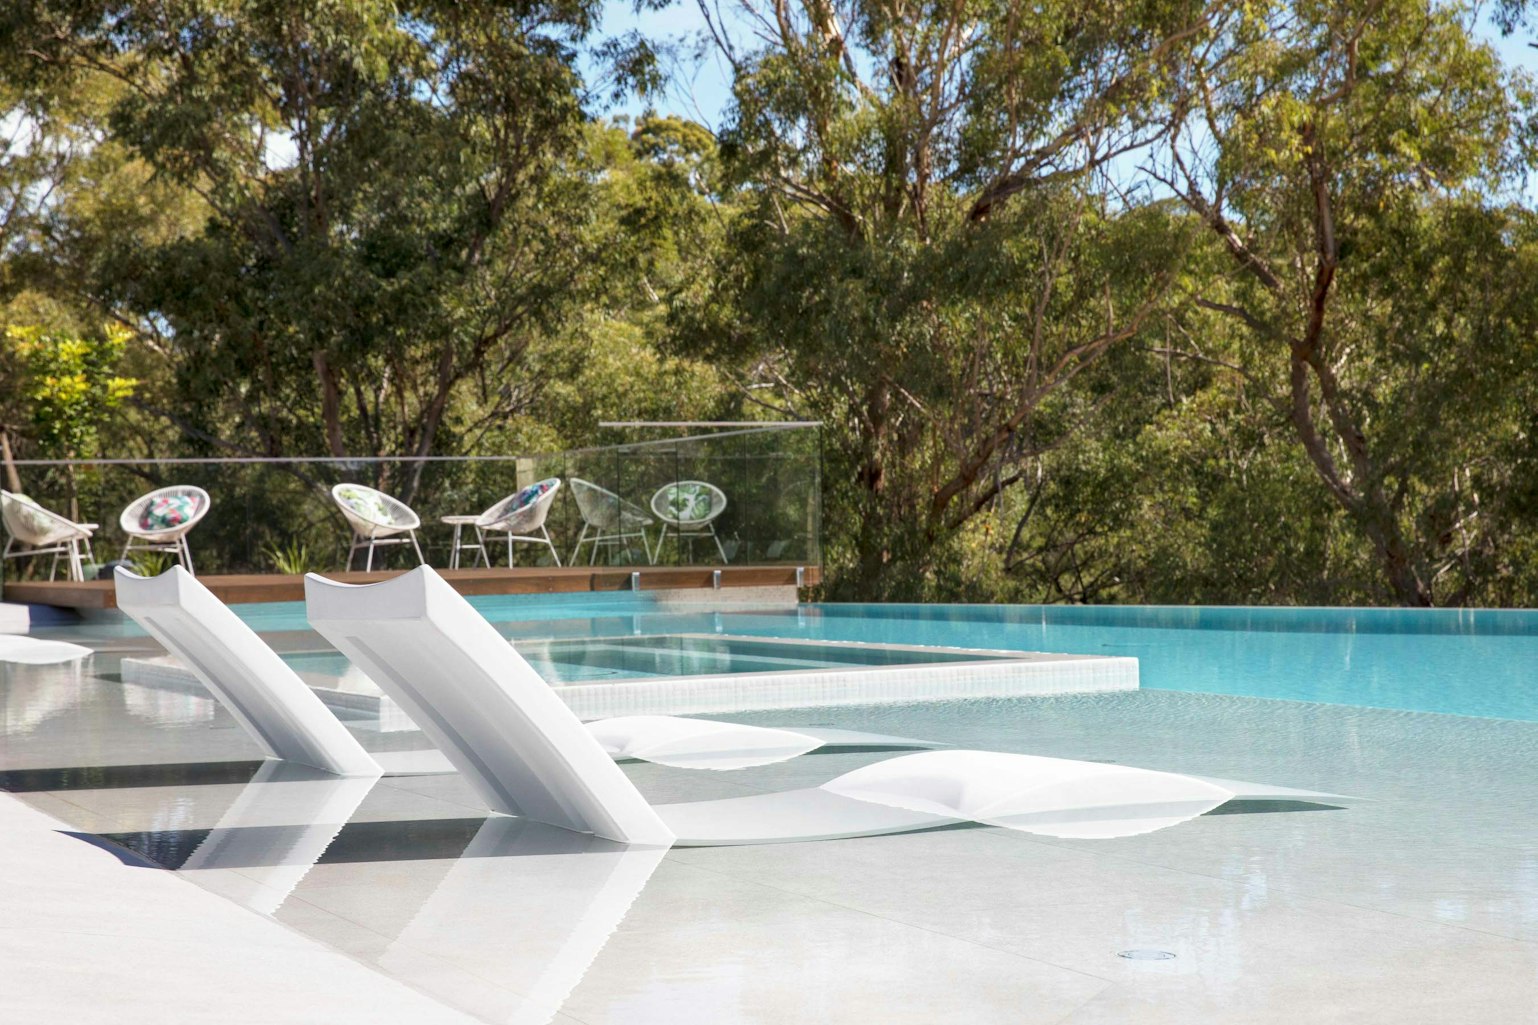 Pool-Tiles Gallery Australian whitehaven-04